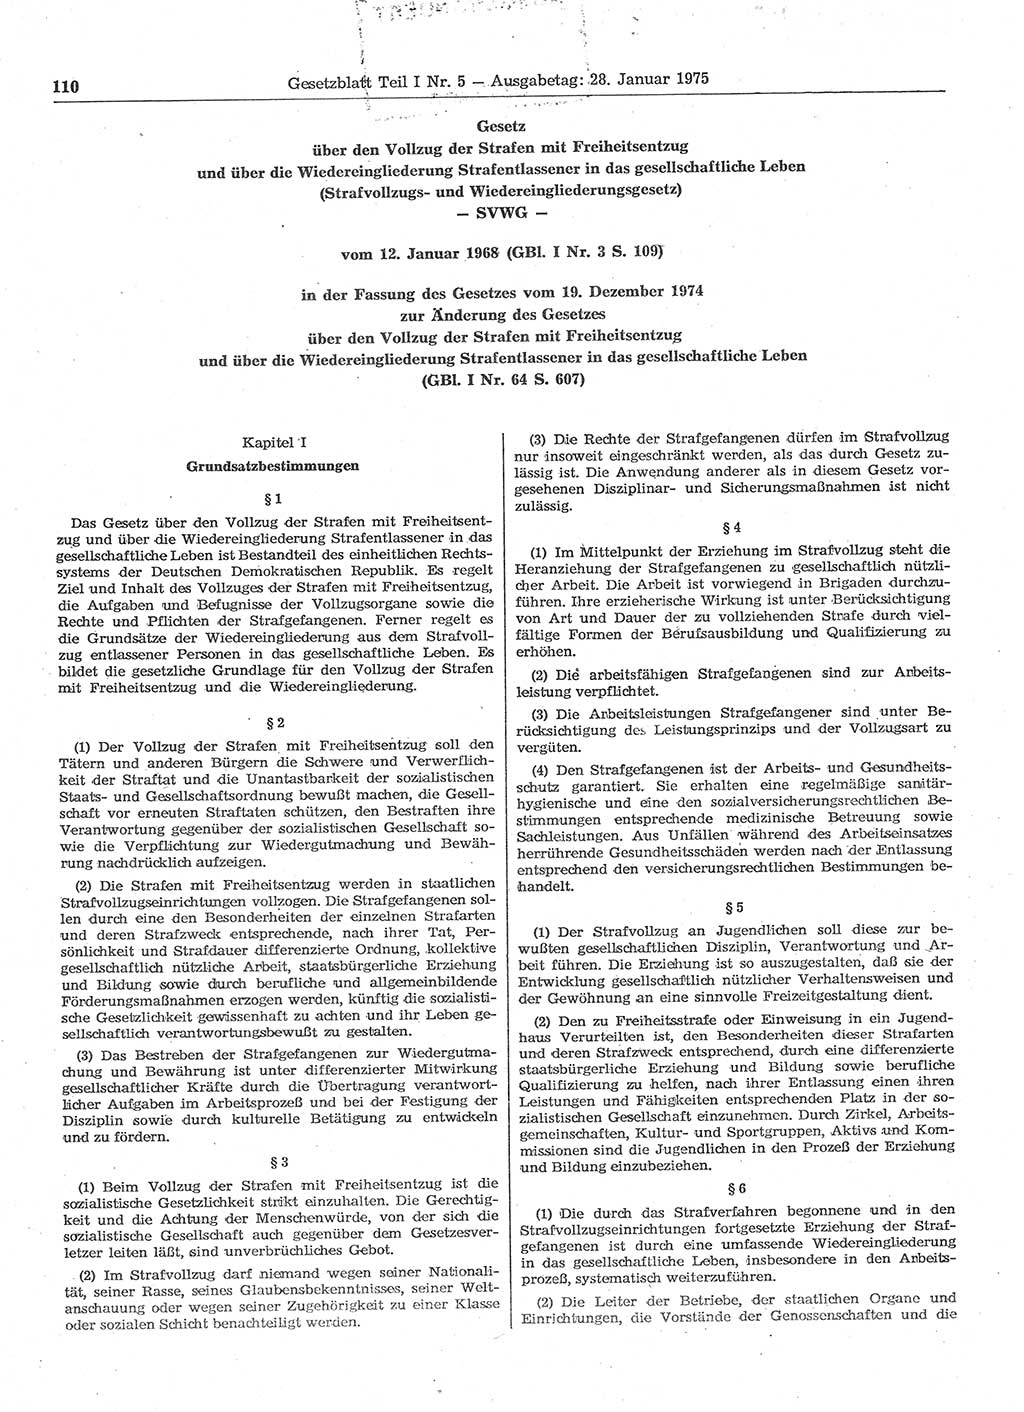 Gesetzblatt (GBl.) der Deutschen Demokratischen Republik (DDR) Teil Ⅰ 1975, Seite 110 (GBl. DDR Ⅰ 1975, S. 110)